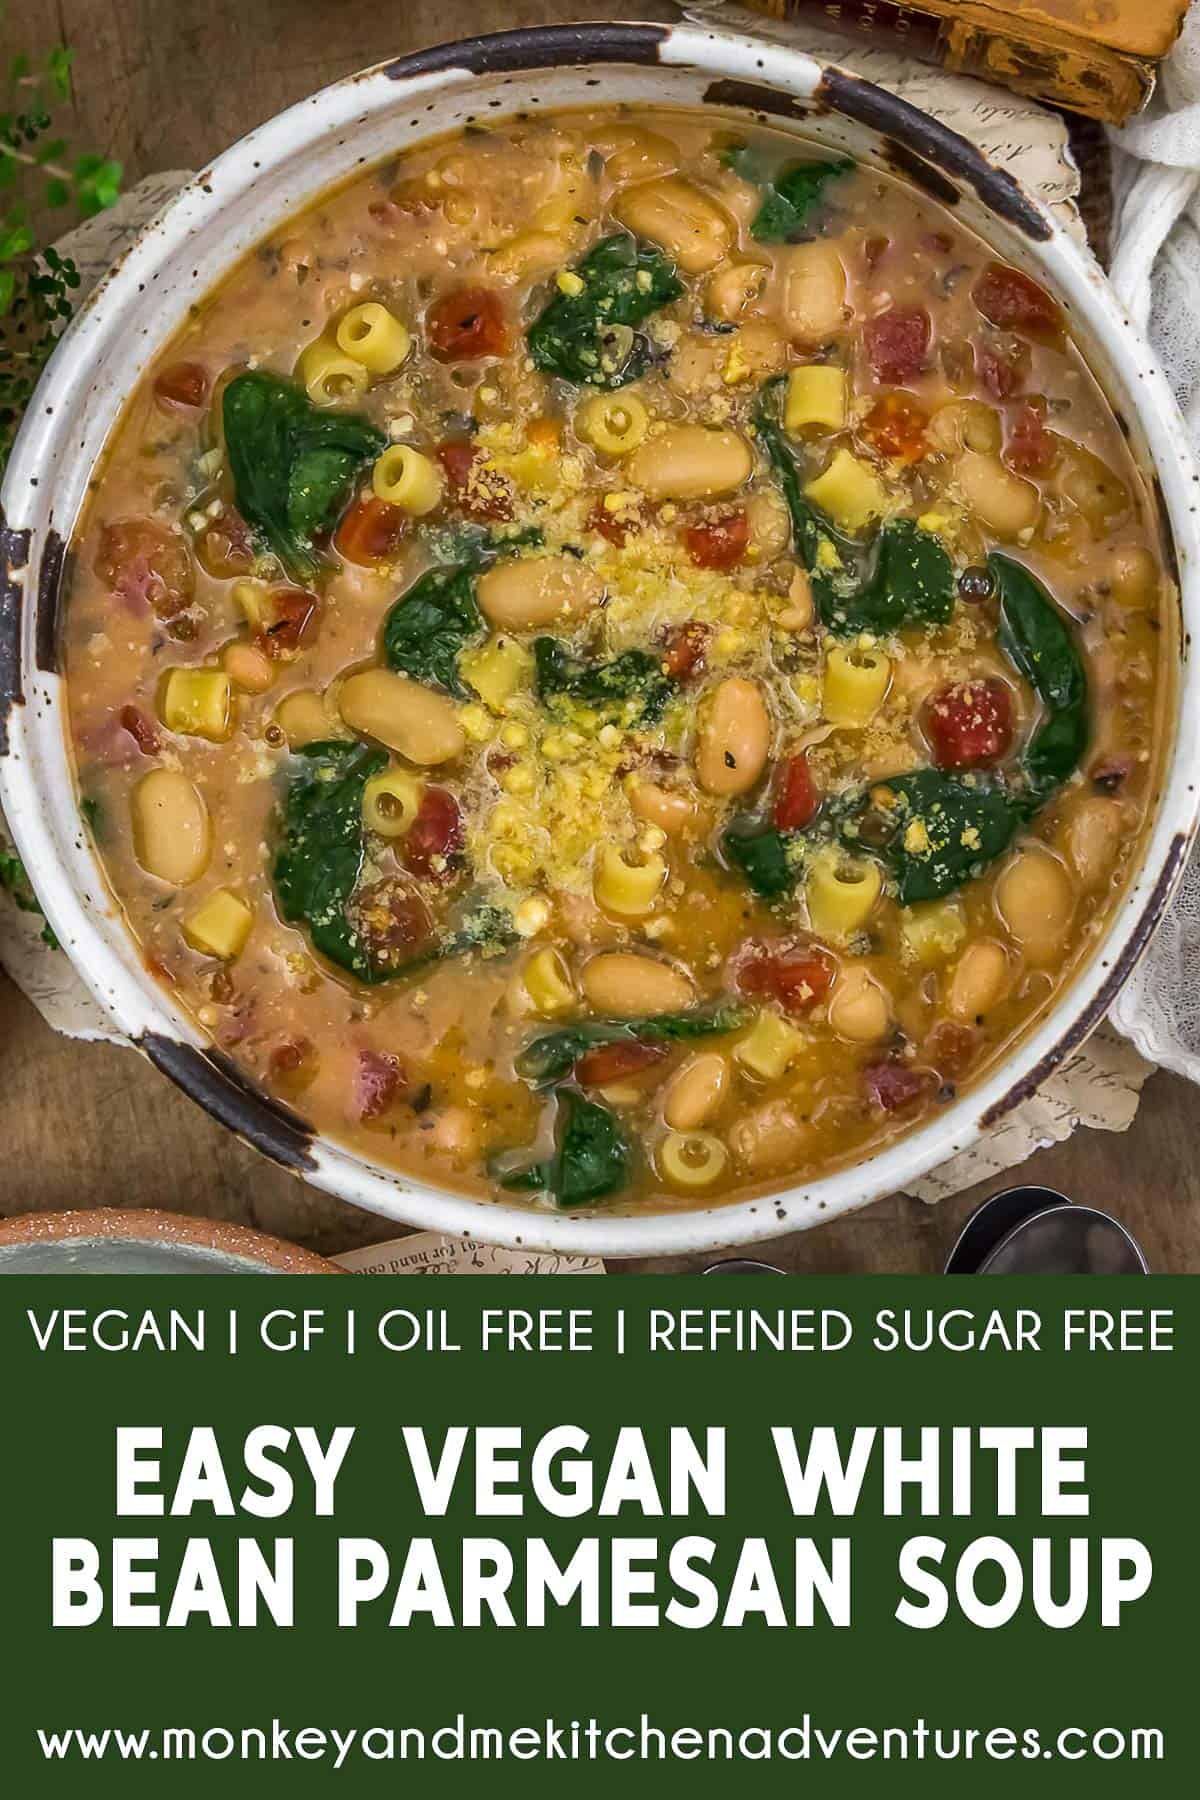 Easy Vegan White Bean Parmesan Soup with text description